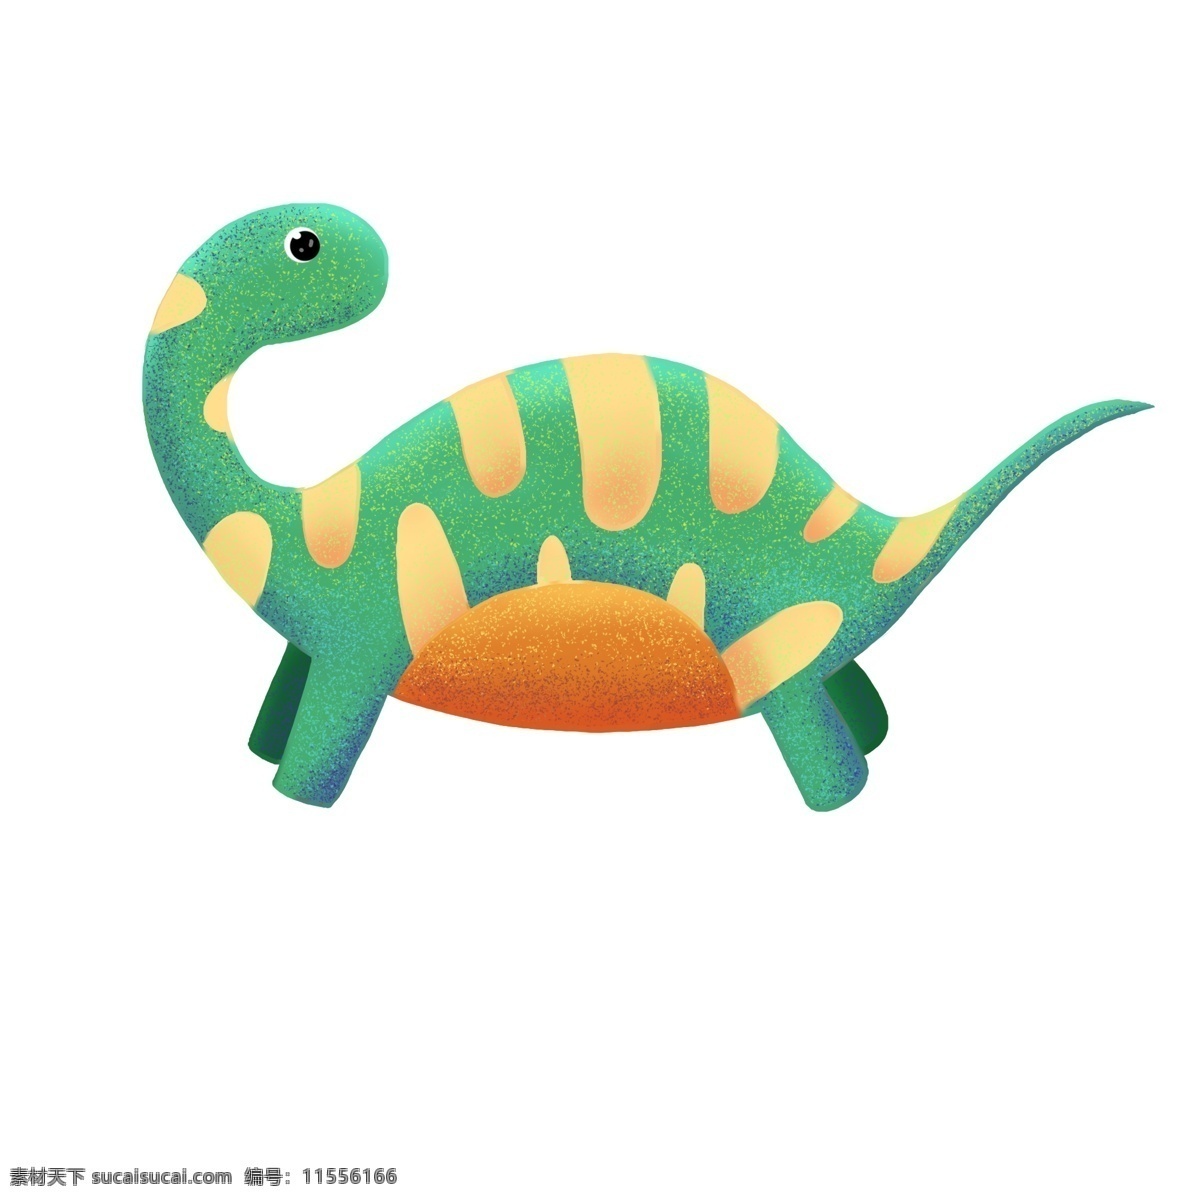 卡通 黄绿 恐龙 插画 花纹小恐龙 小恐龙 可爱黄绿恐龙 野生动物 花纹玩具恐龙 玩具恐龙插画